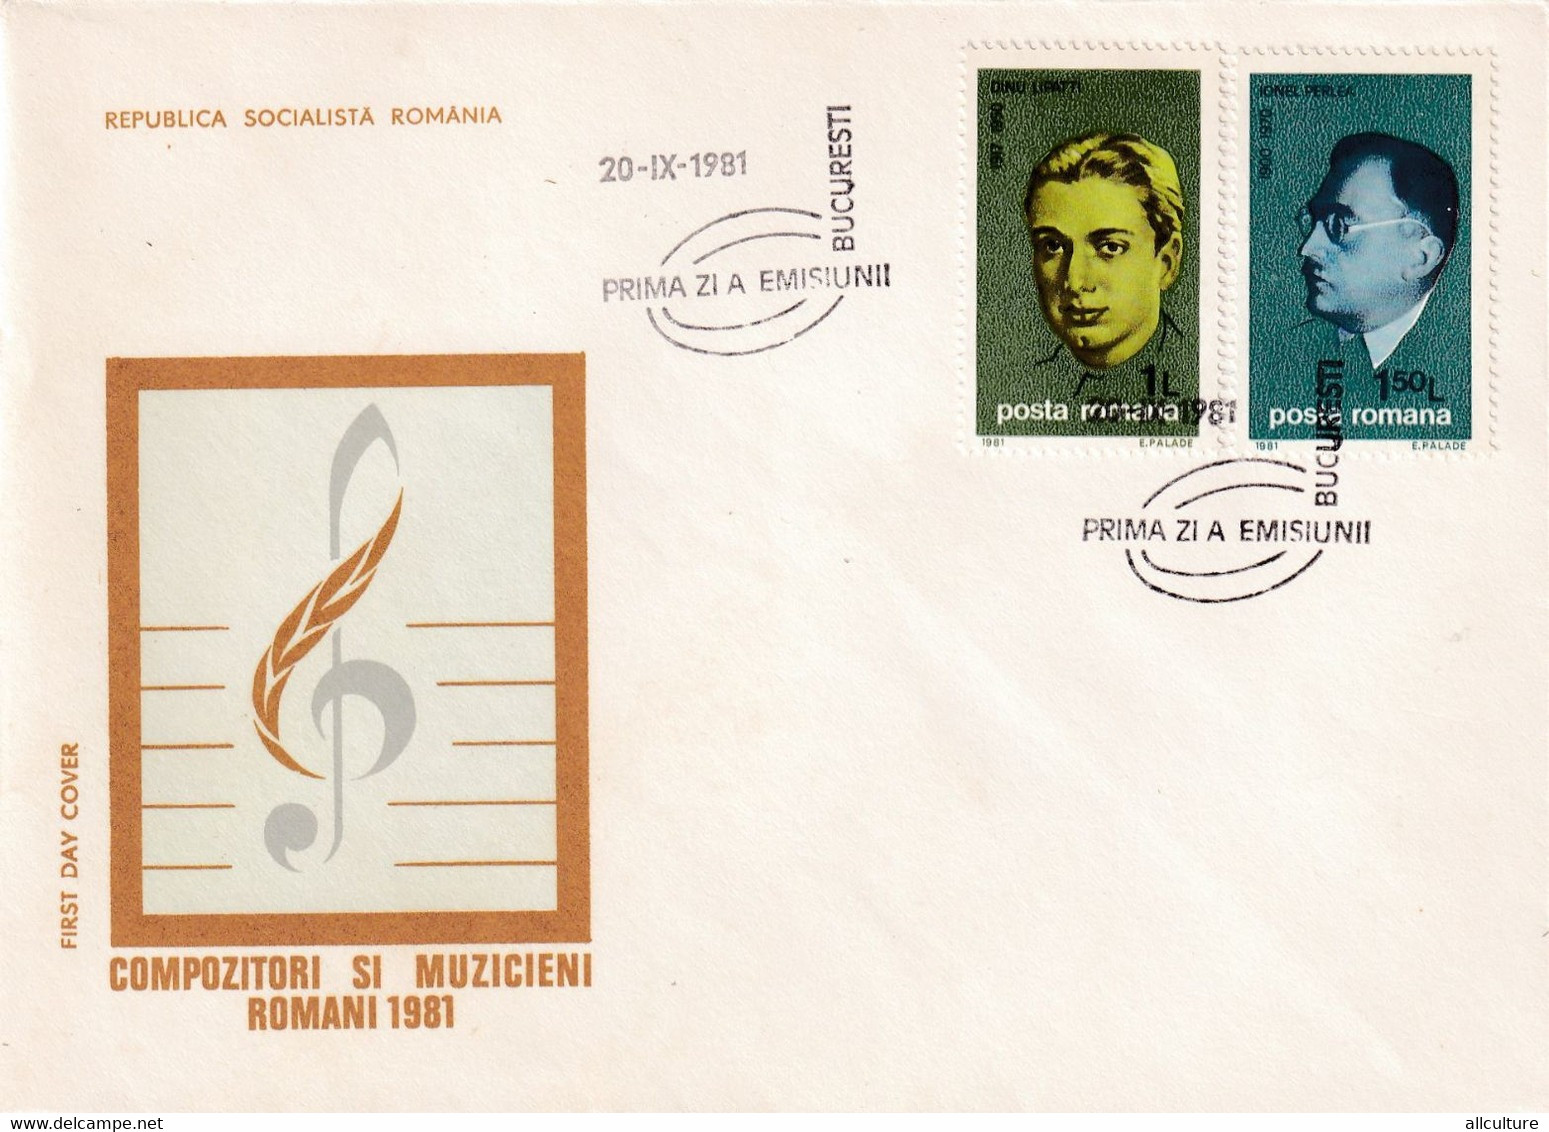 A2659- Compozitori Si Muzicieni Romani 1981, Republica Socialista Romania, Bucuresti 1981  3 Covers FDC - FDC